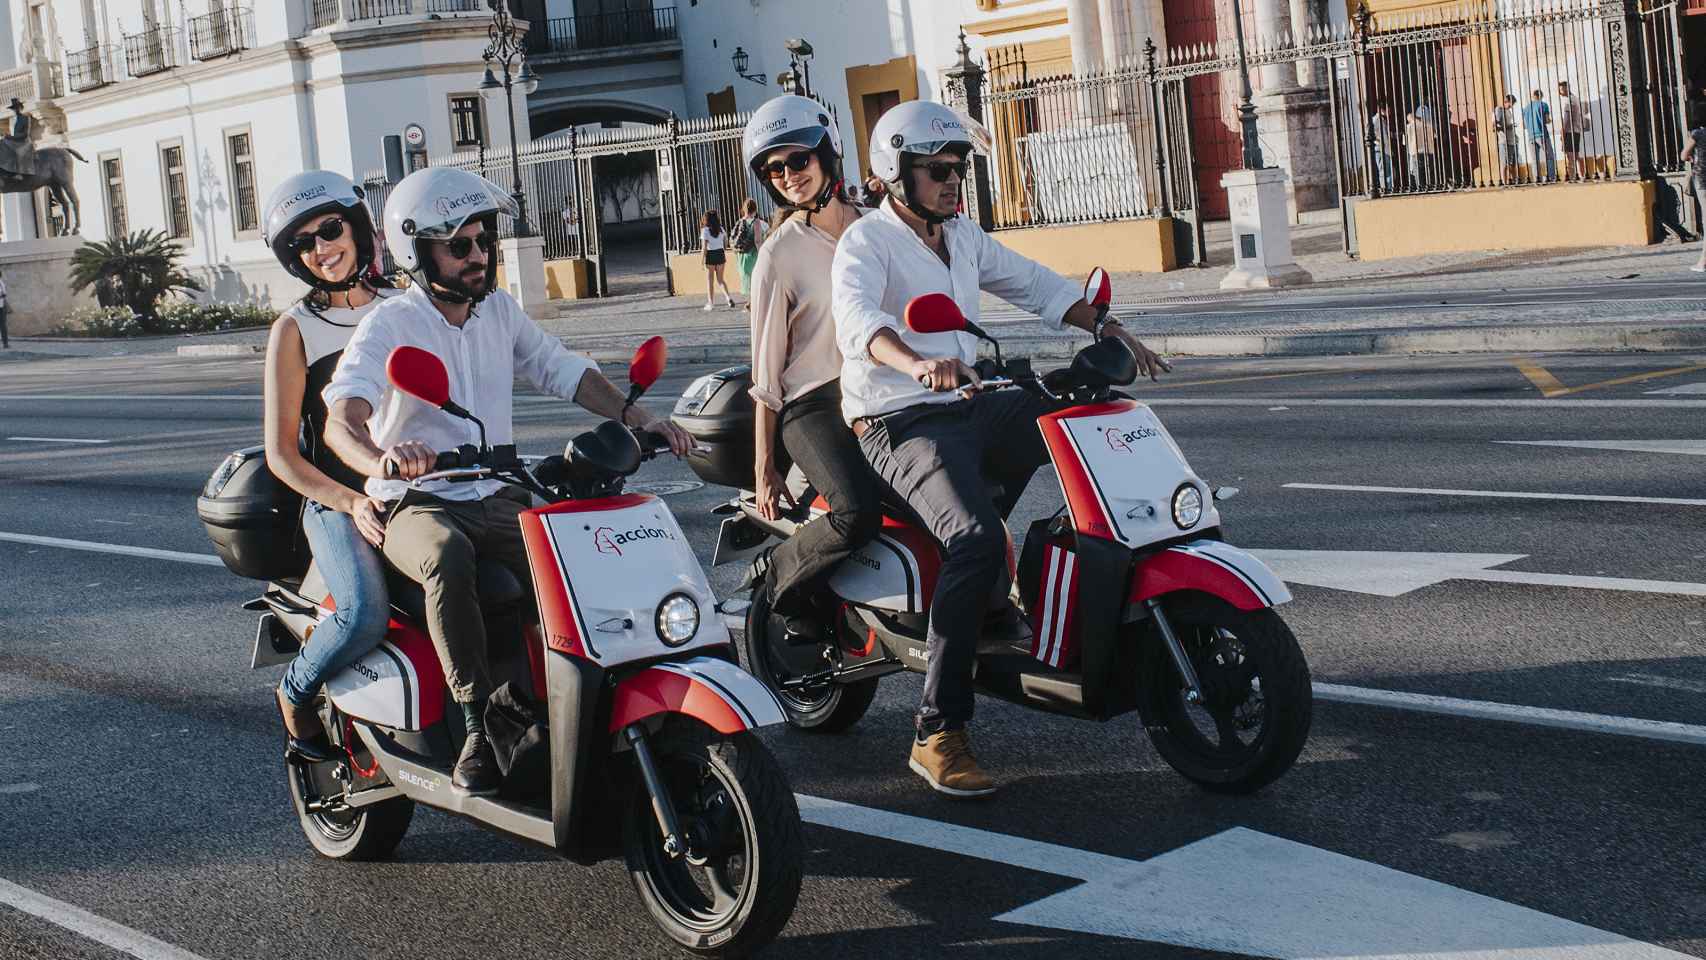 Acciona despliega su servicio de motos eléctricas compartidas en Sevilla